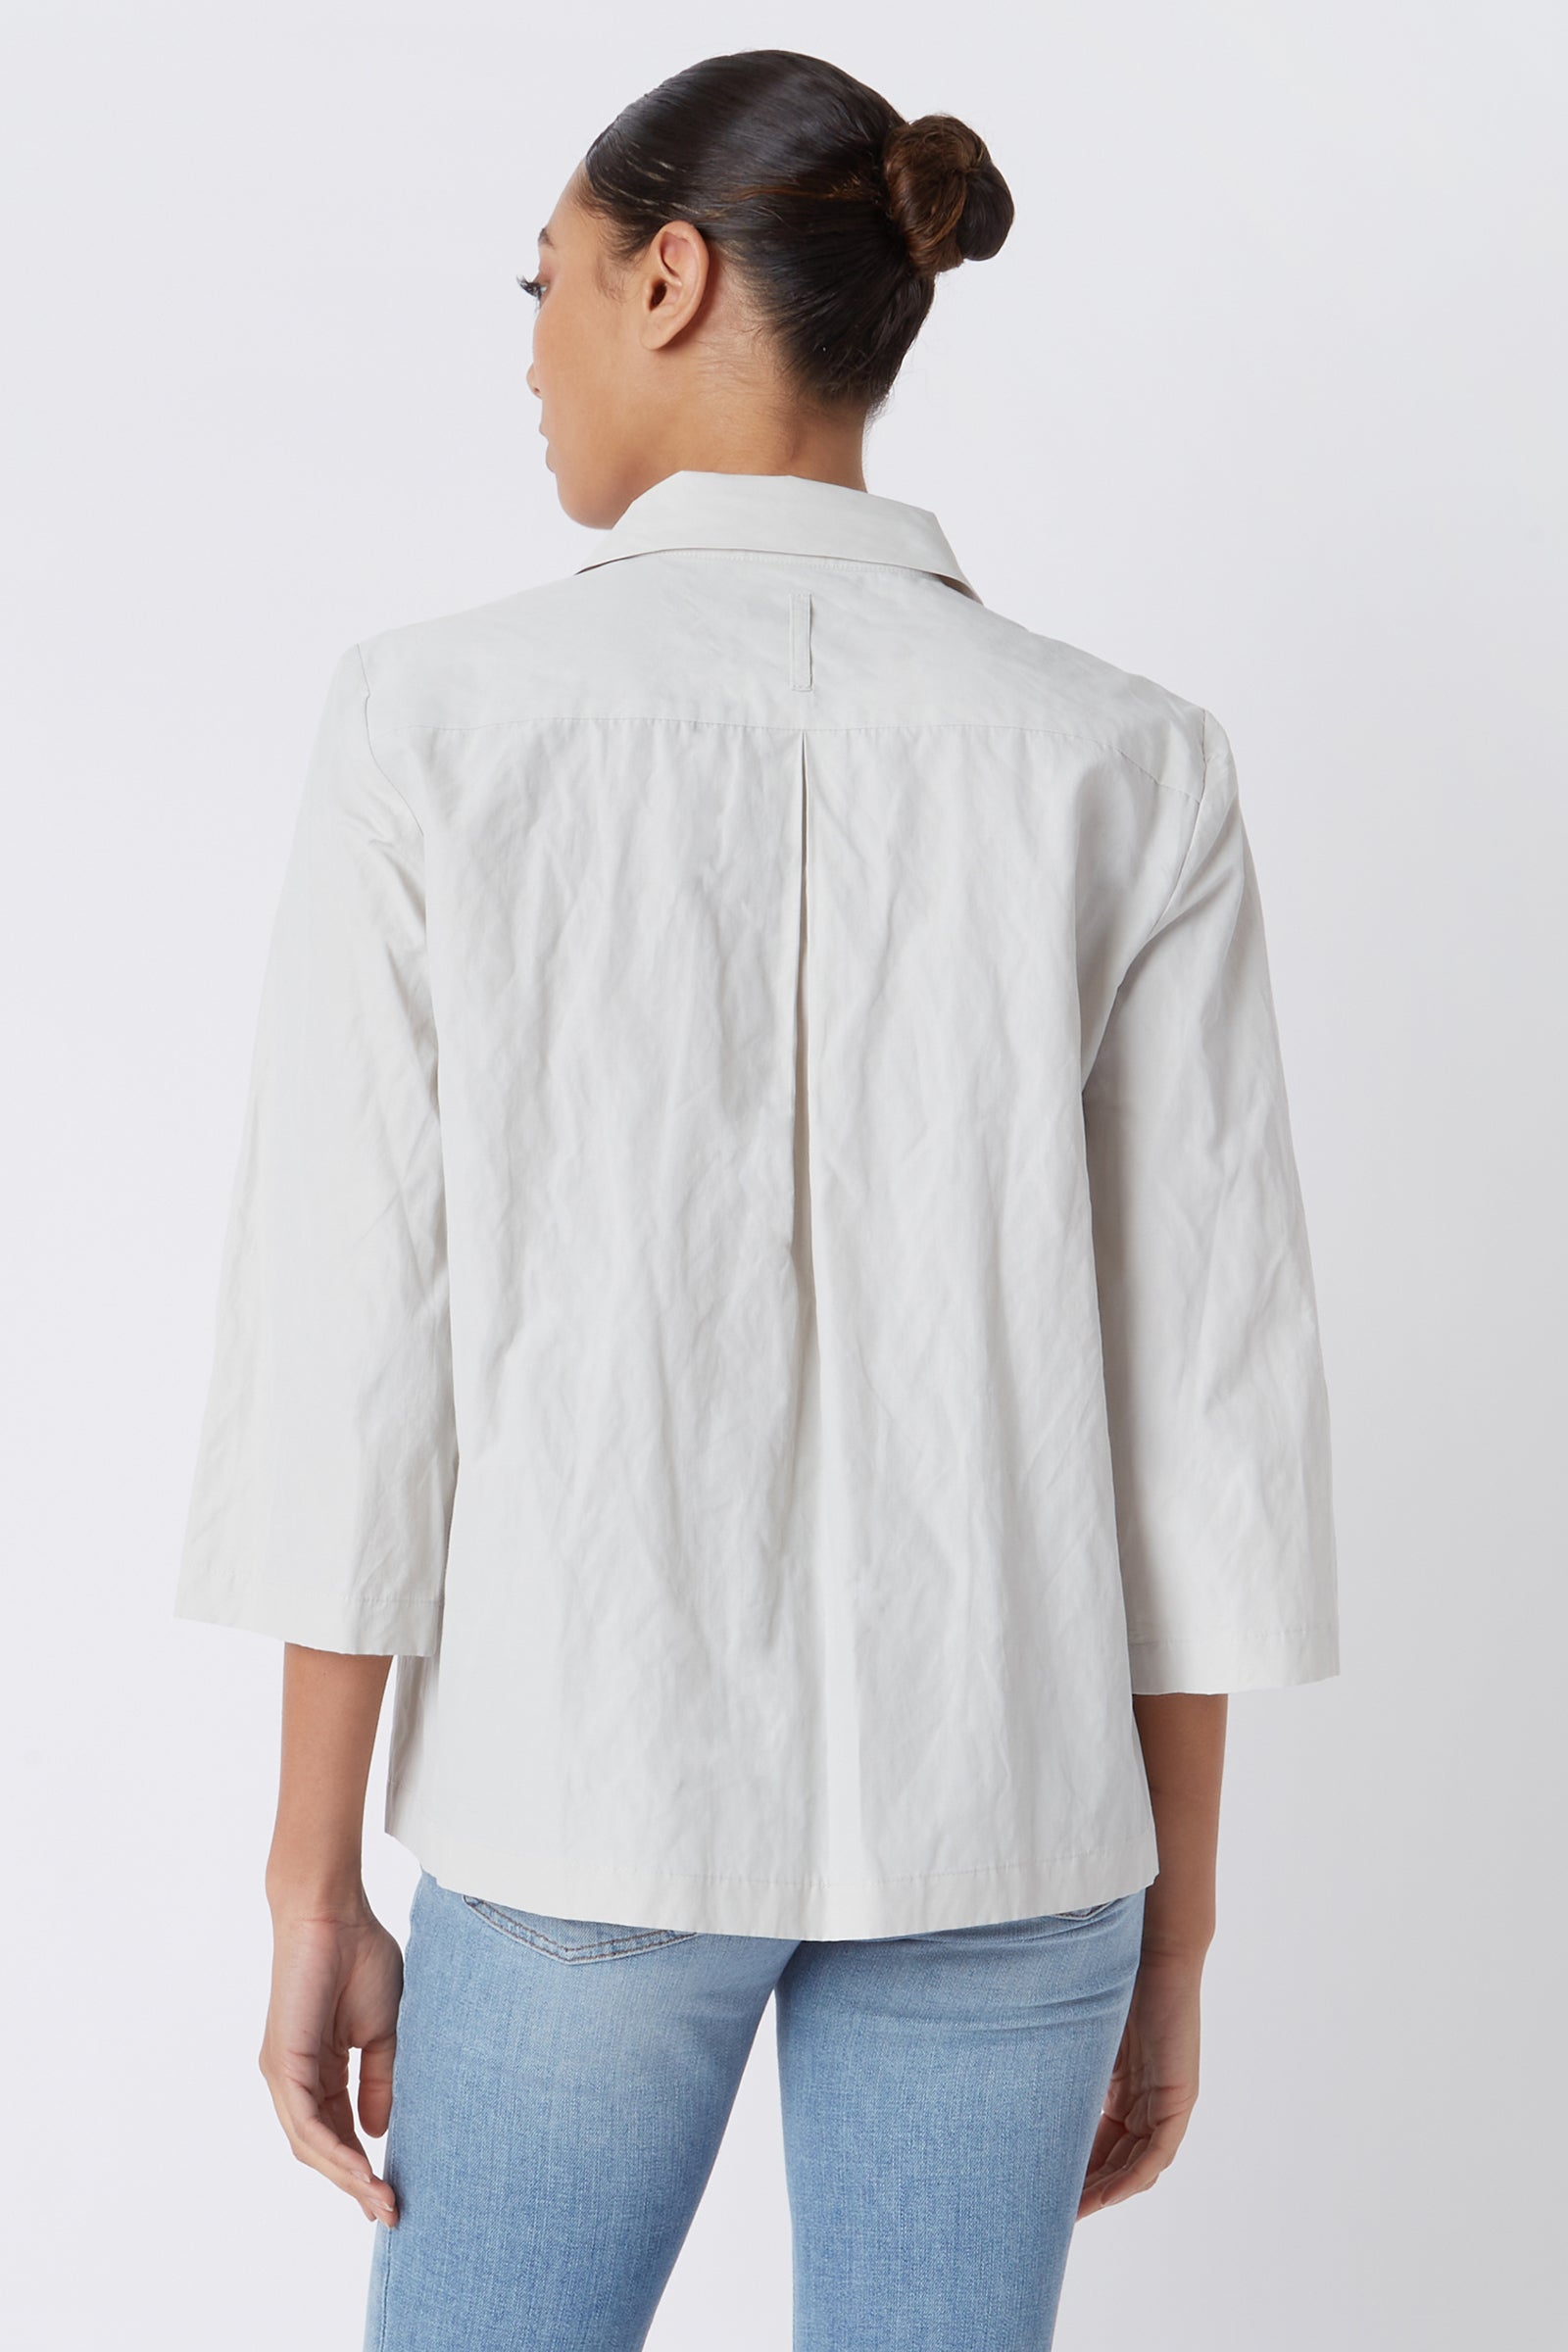 Seam Pocket Tunic in Stone Cotton Nylon – KAL RIEMAN